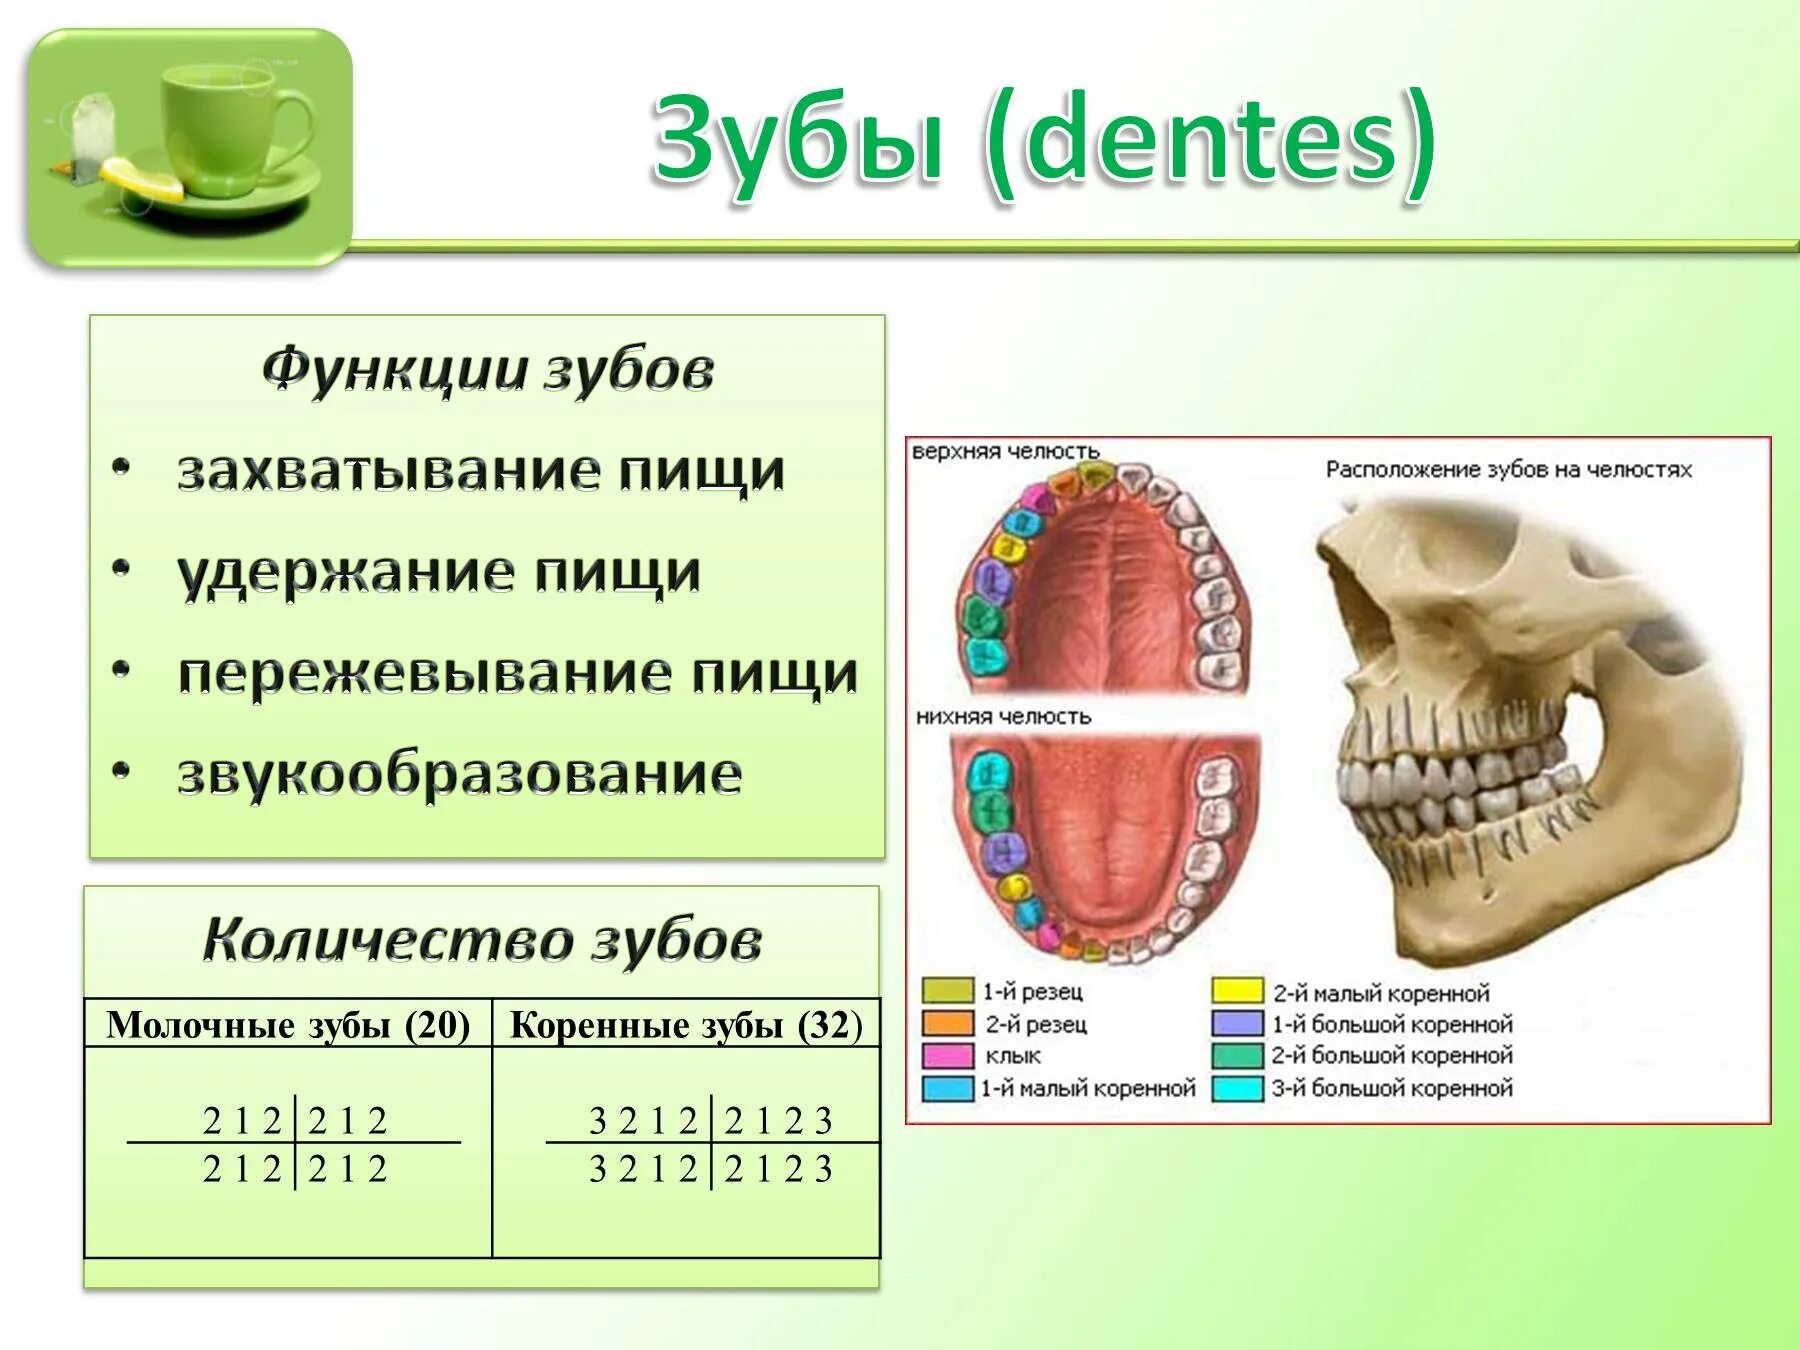 Пищеварение в ротовой полости функции. Биология 8 класс пищеварение в ротовой полости. Функции зубов в пищеварении. Строение зуба и функции биология. Зубы строение и функции.